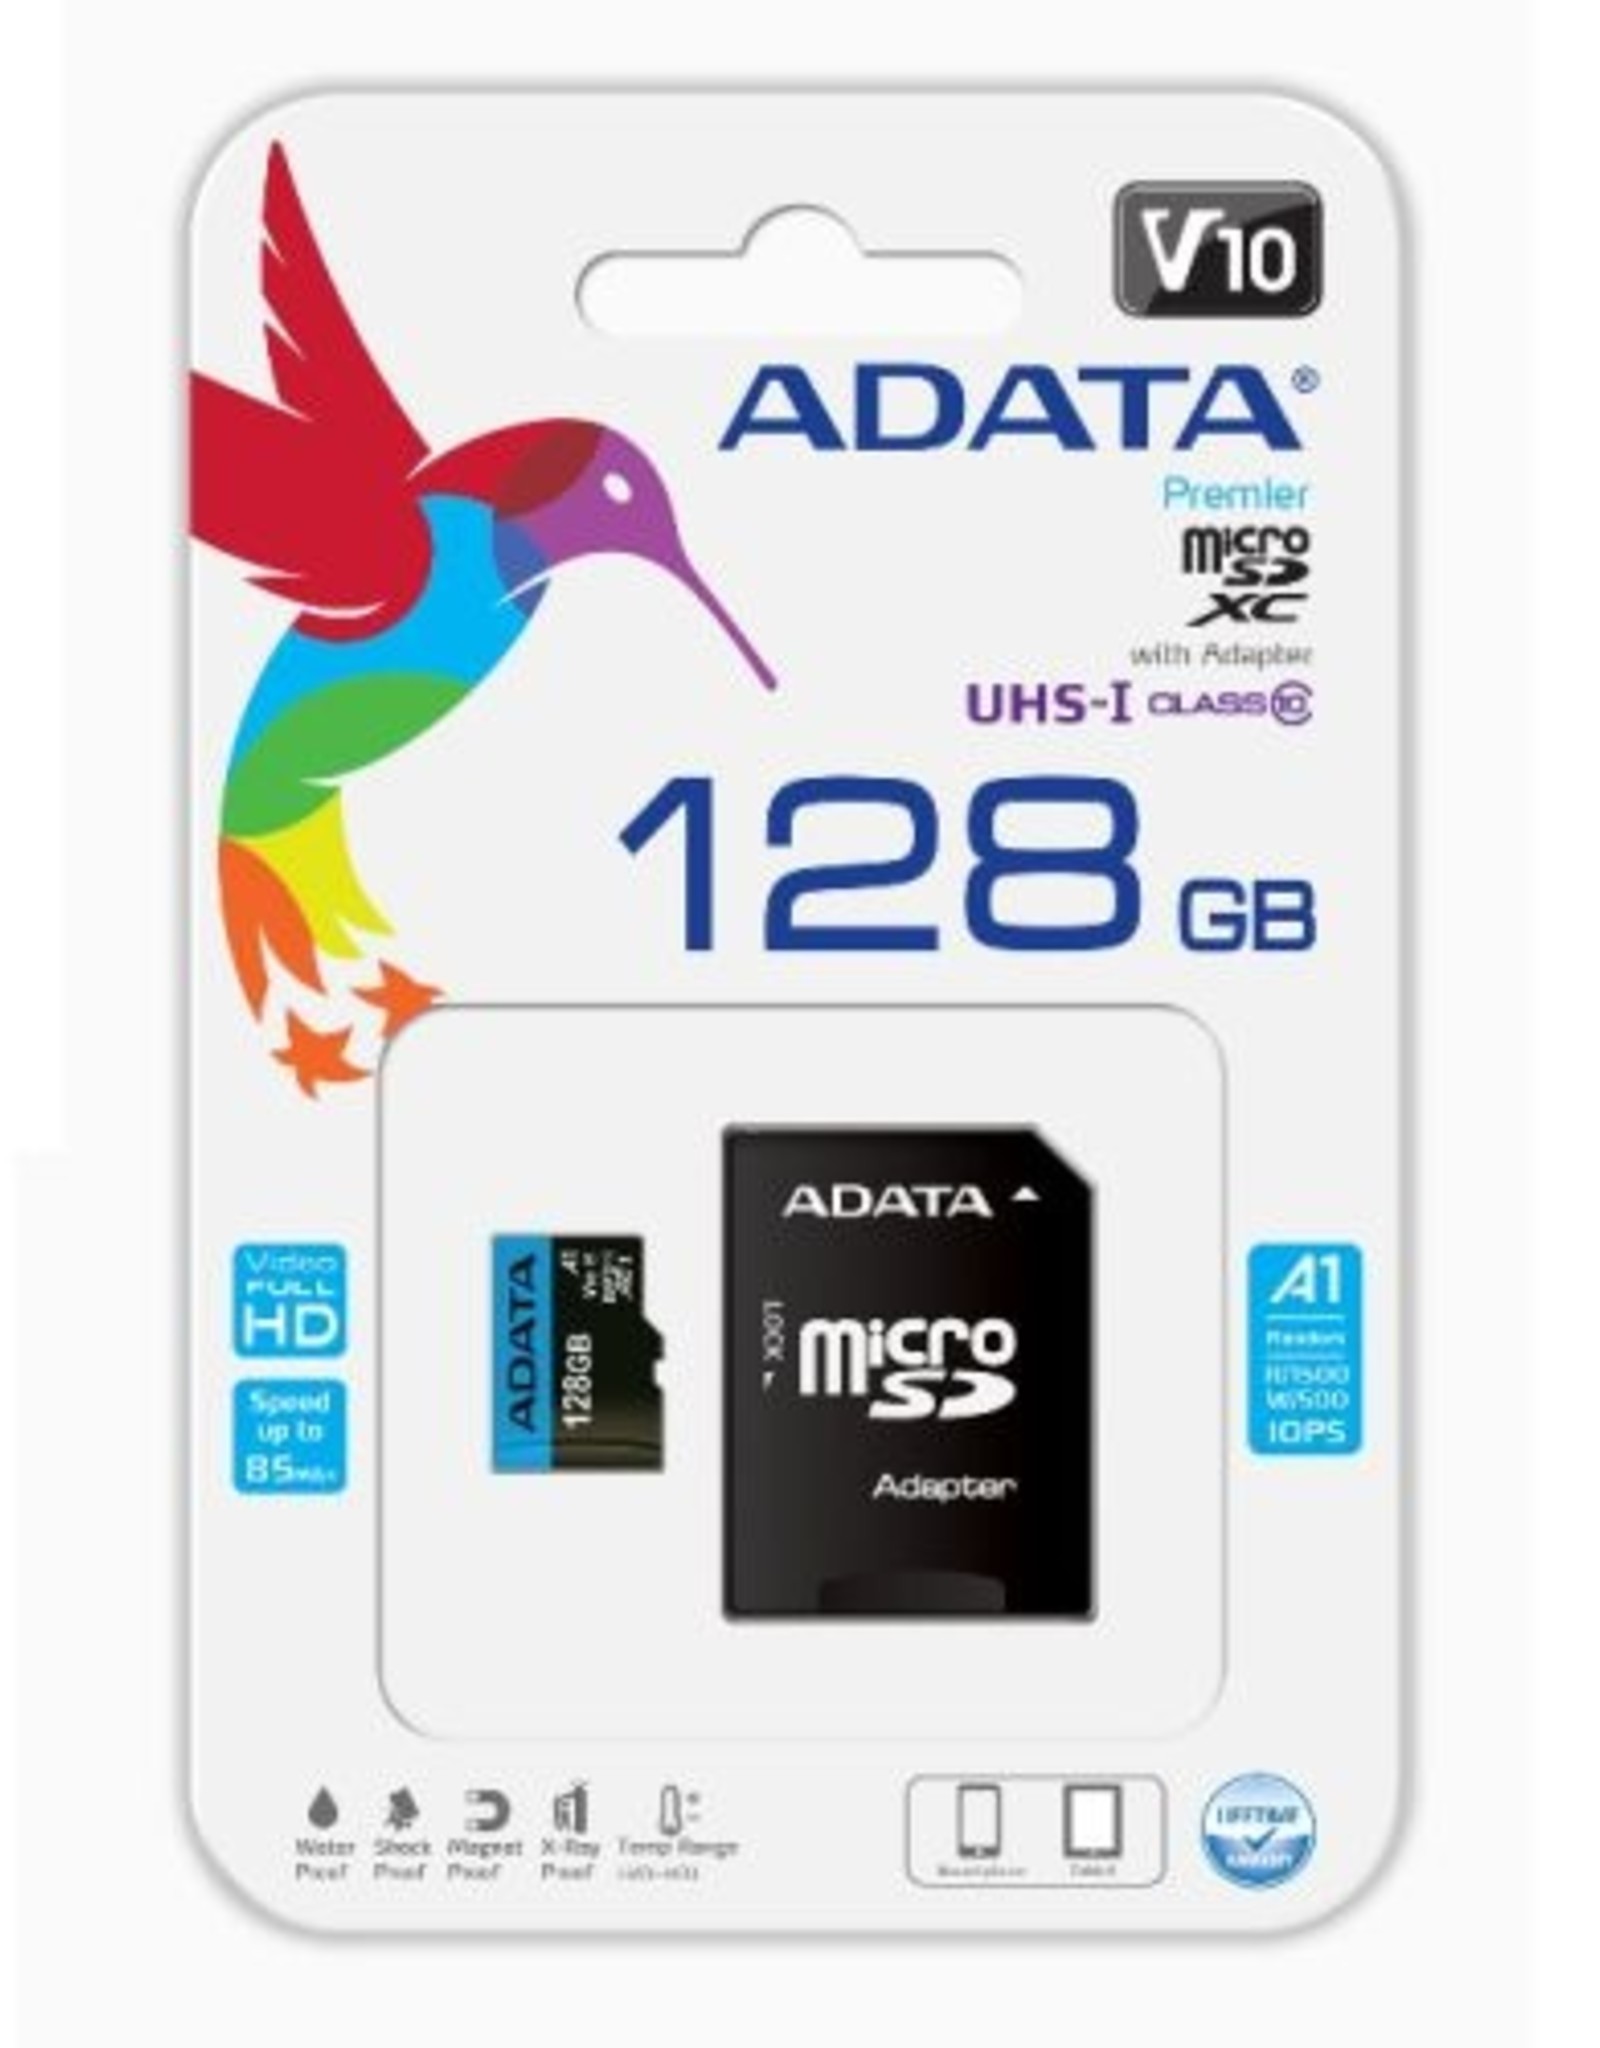 ADATA ADATA 128GBHIGHCAPACITY CLASS10-A1 SD CARD, READ/WRITE 100/25MBS, +  SD ADAP